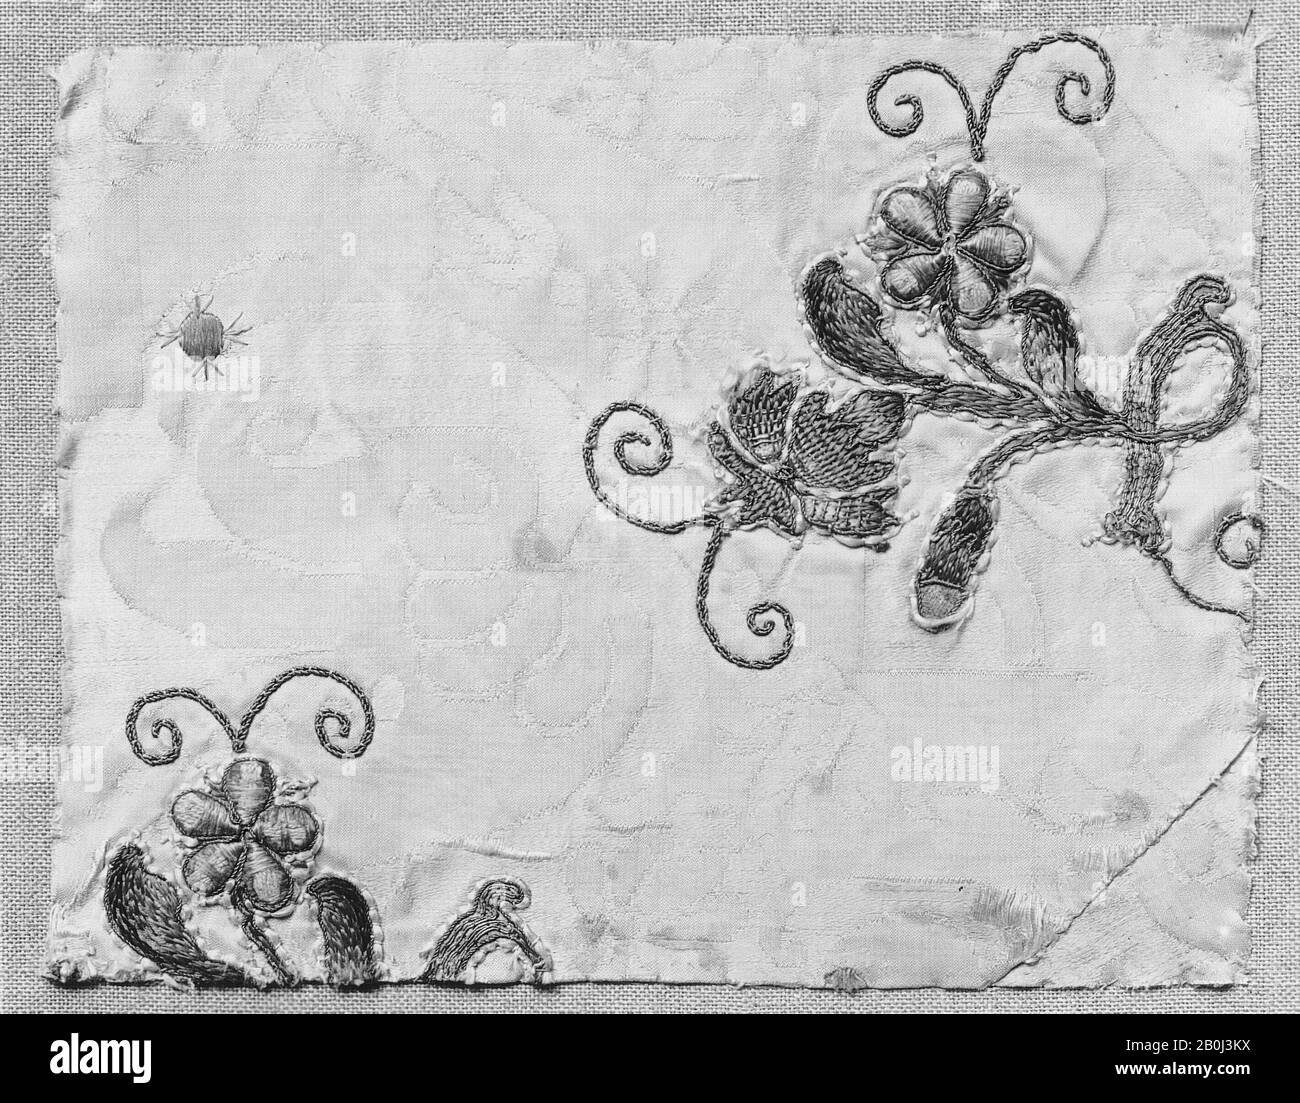 Fragmento, italiano, siglo XVII-XVIII, italiano, seda y hilo metálico sobre seda, L. 8 x W. 9 3/4 pulgadas (20.3 x 24.8 cm), bordado de textiles Foto de stock